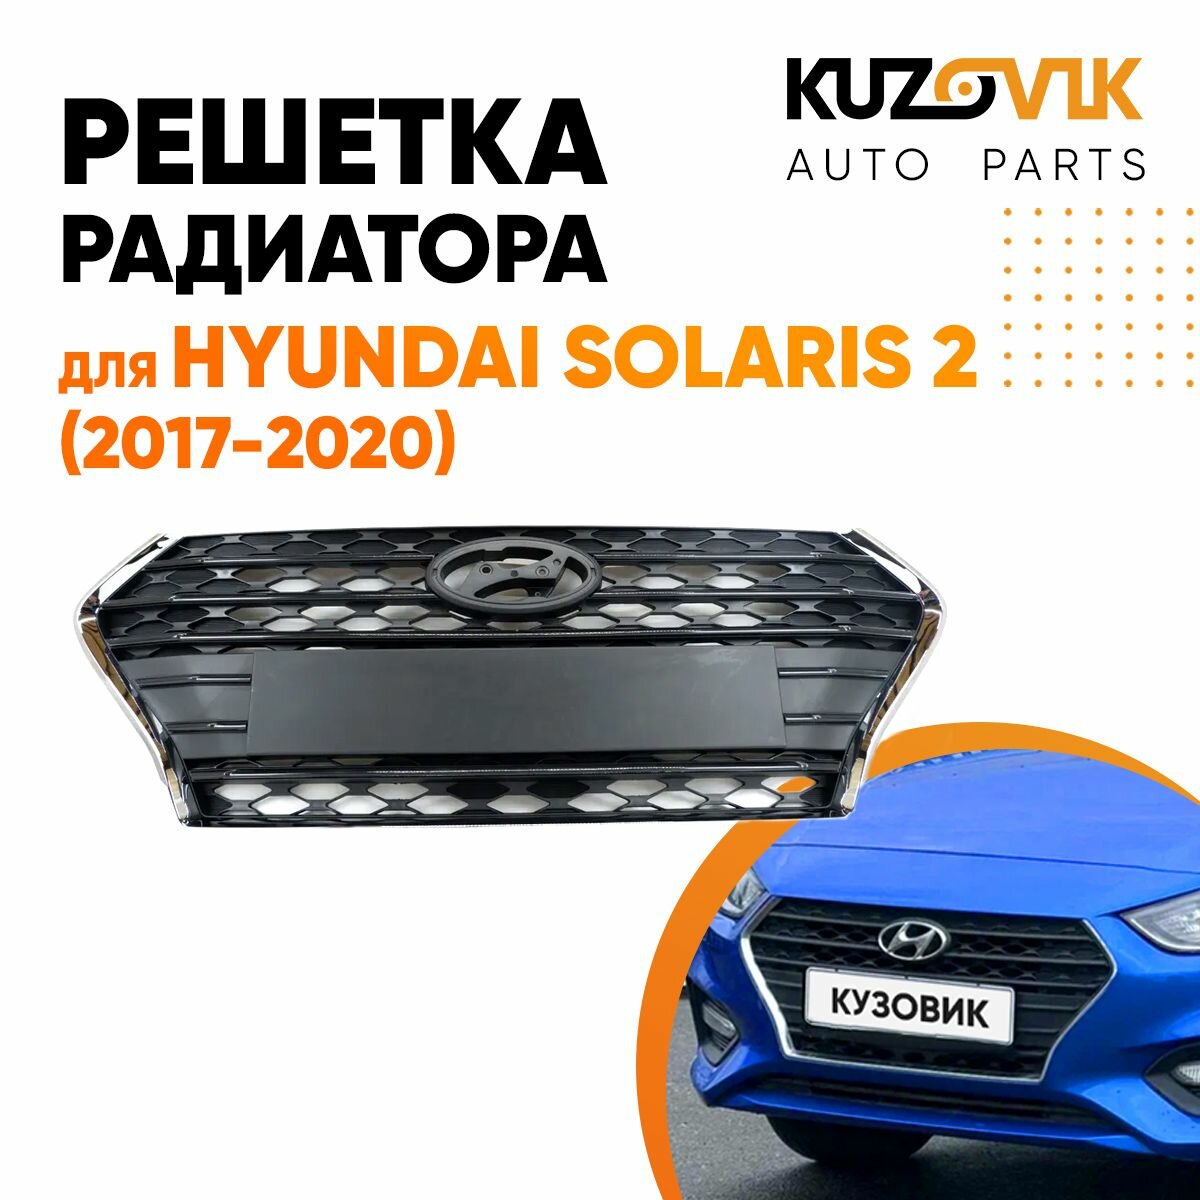 Решетка переднего бампера Hyundai Solaris 2 (2017-2020)